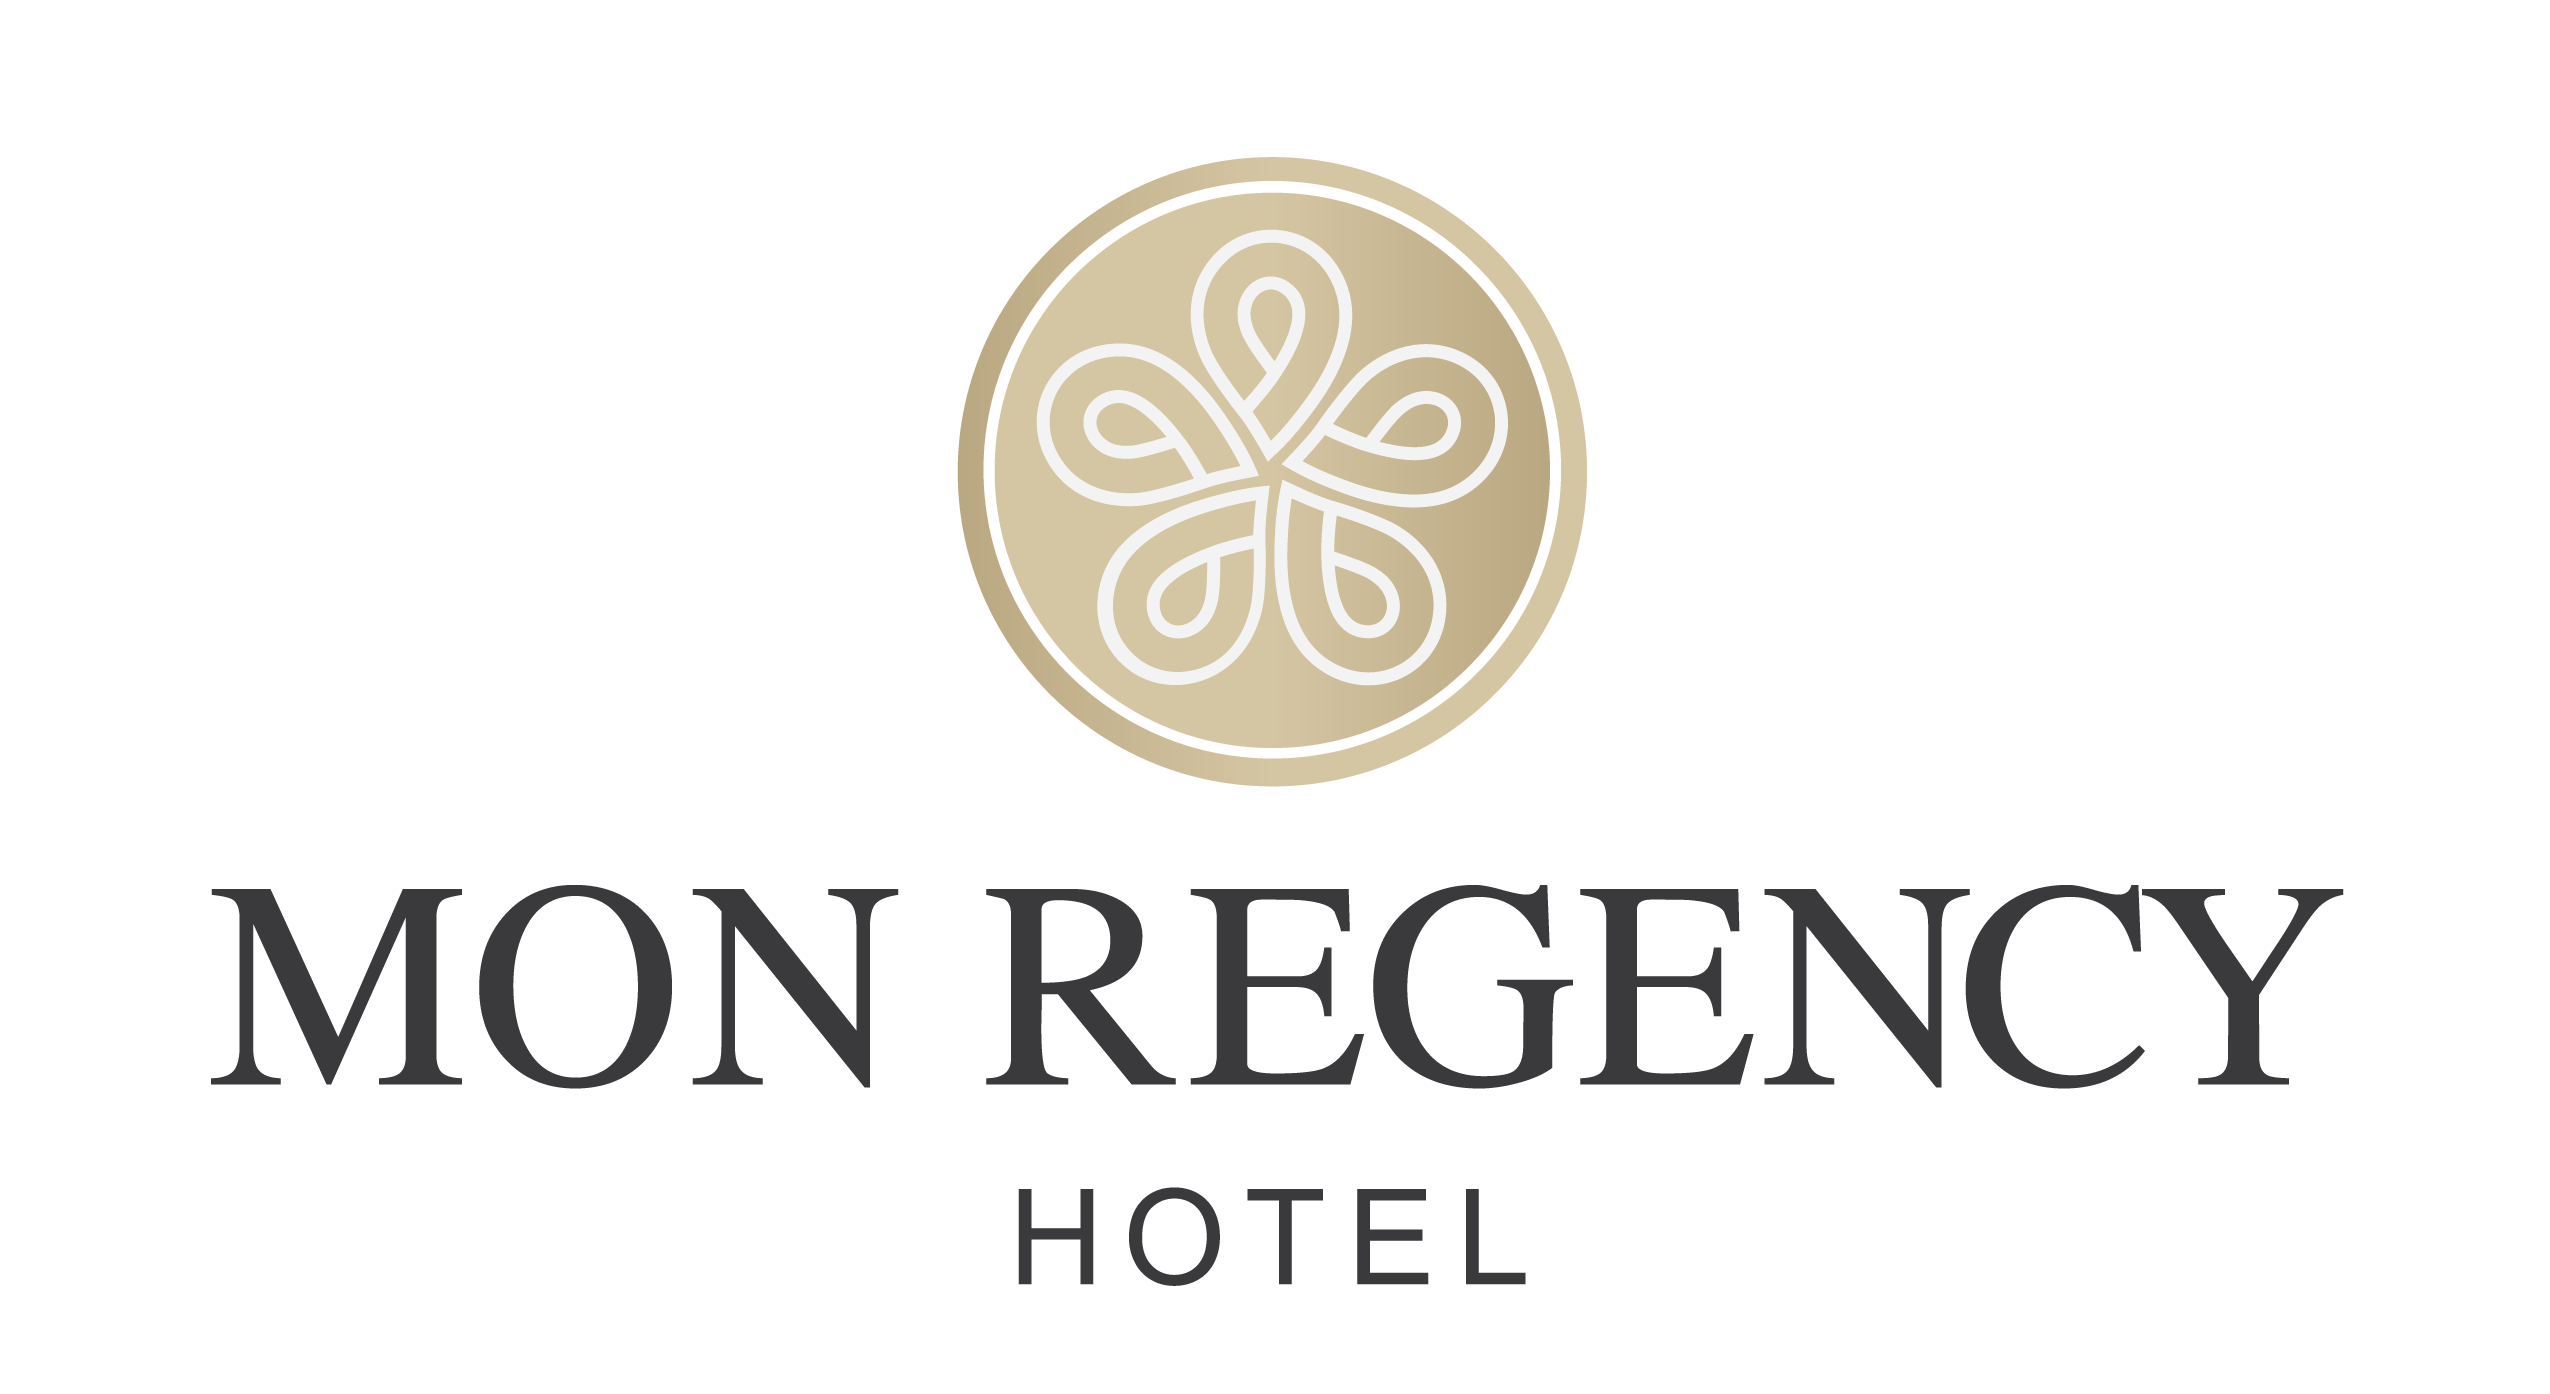 Mon Regency Hotel